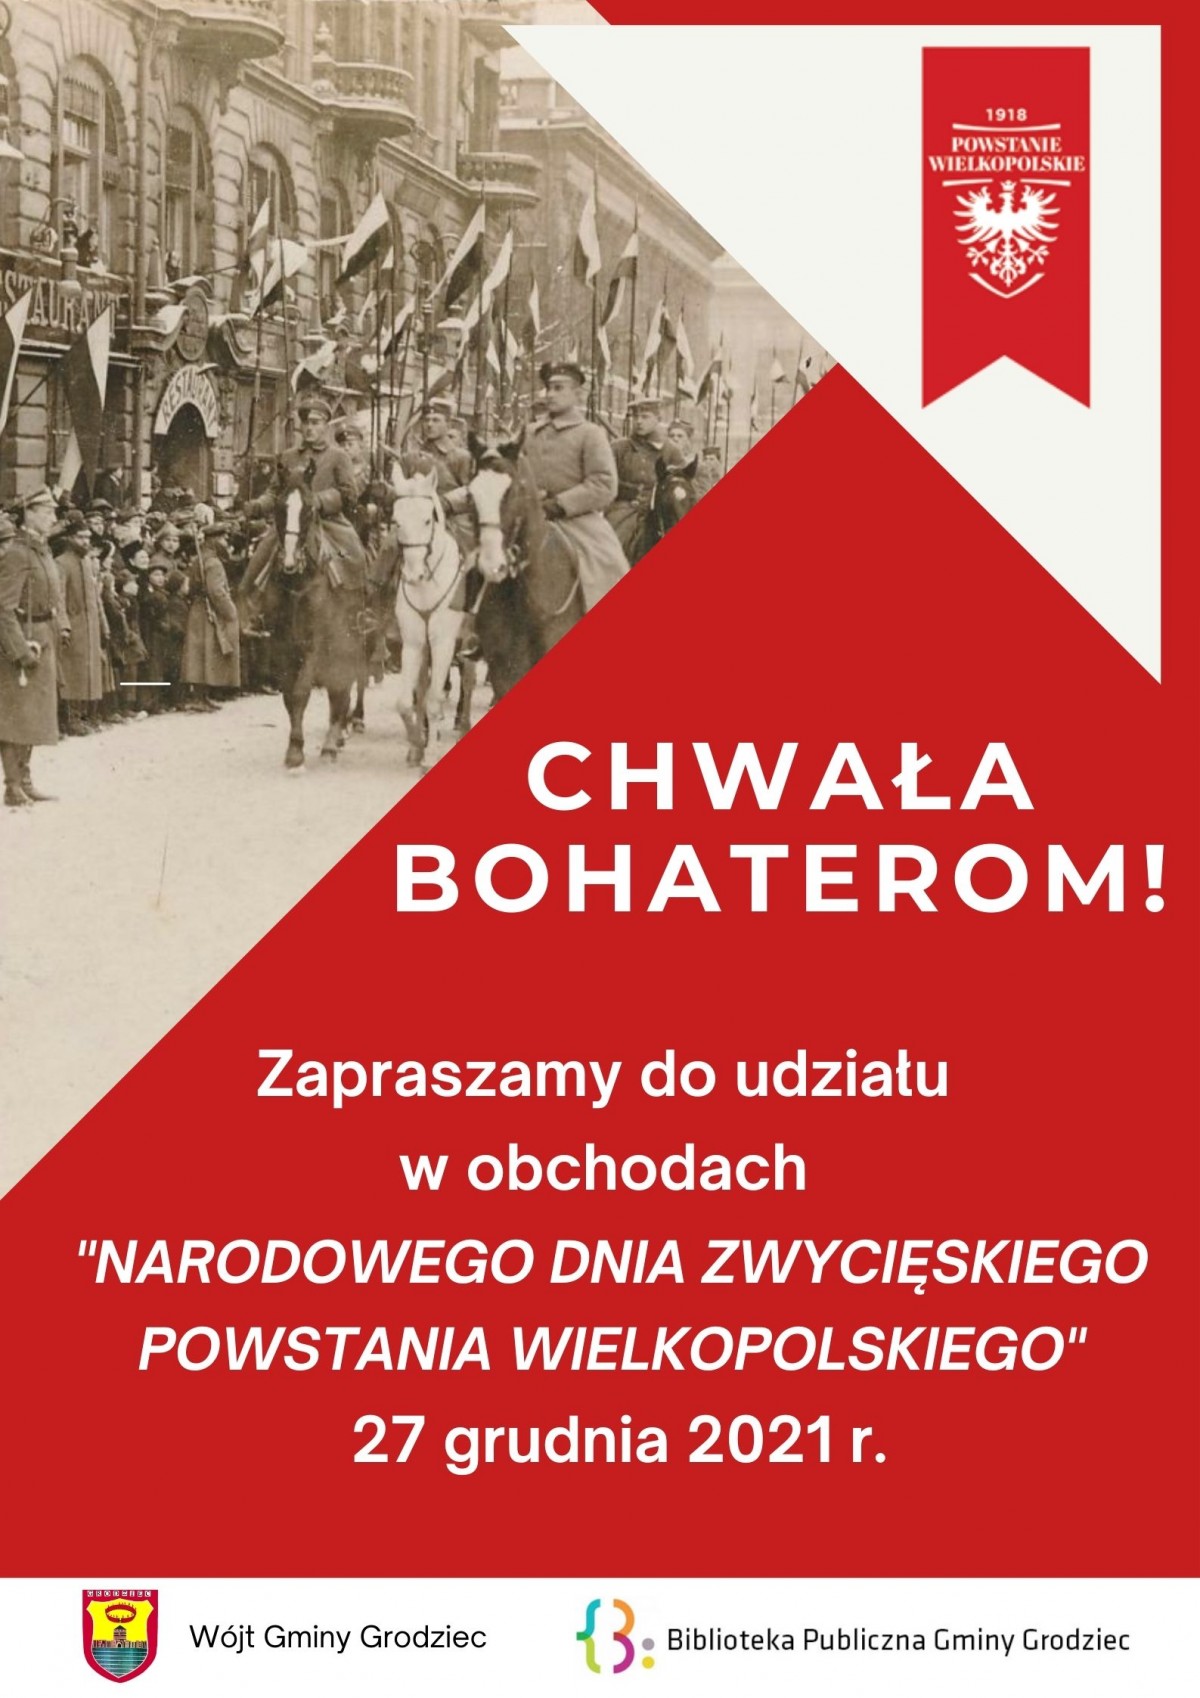 Uczczą Narodowy Dzień Zwycięskiego Powstania Wielkopolskiego